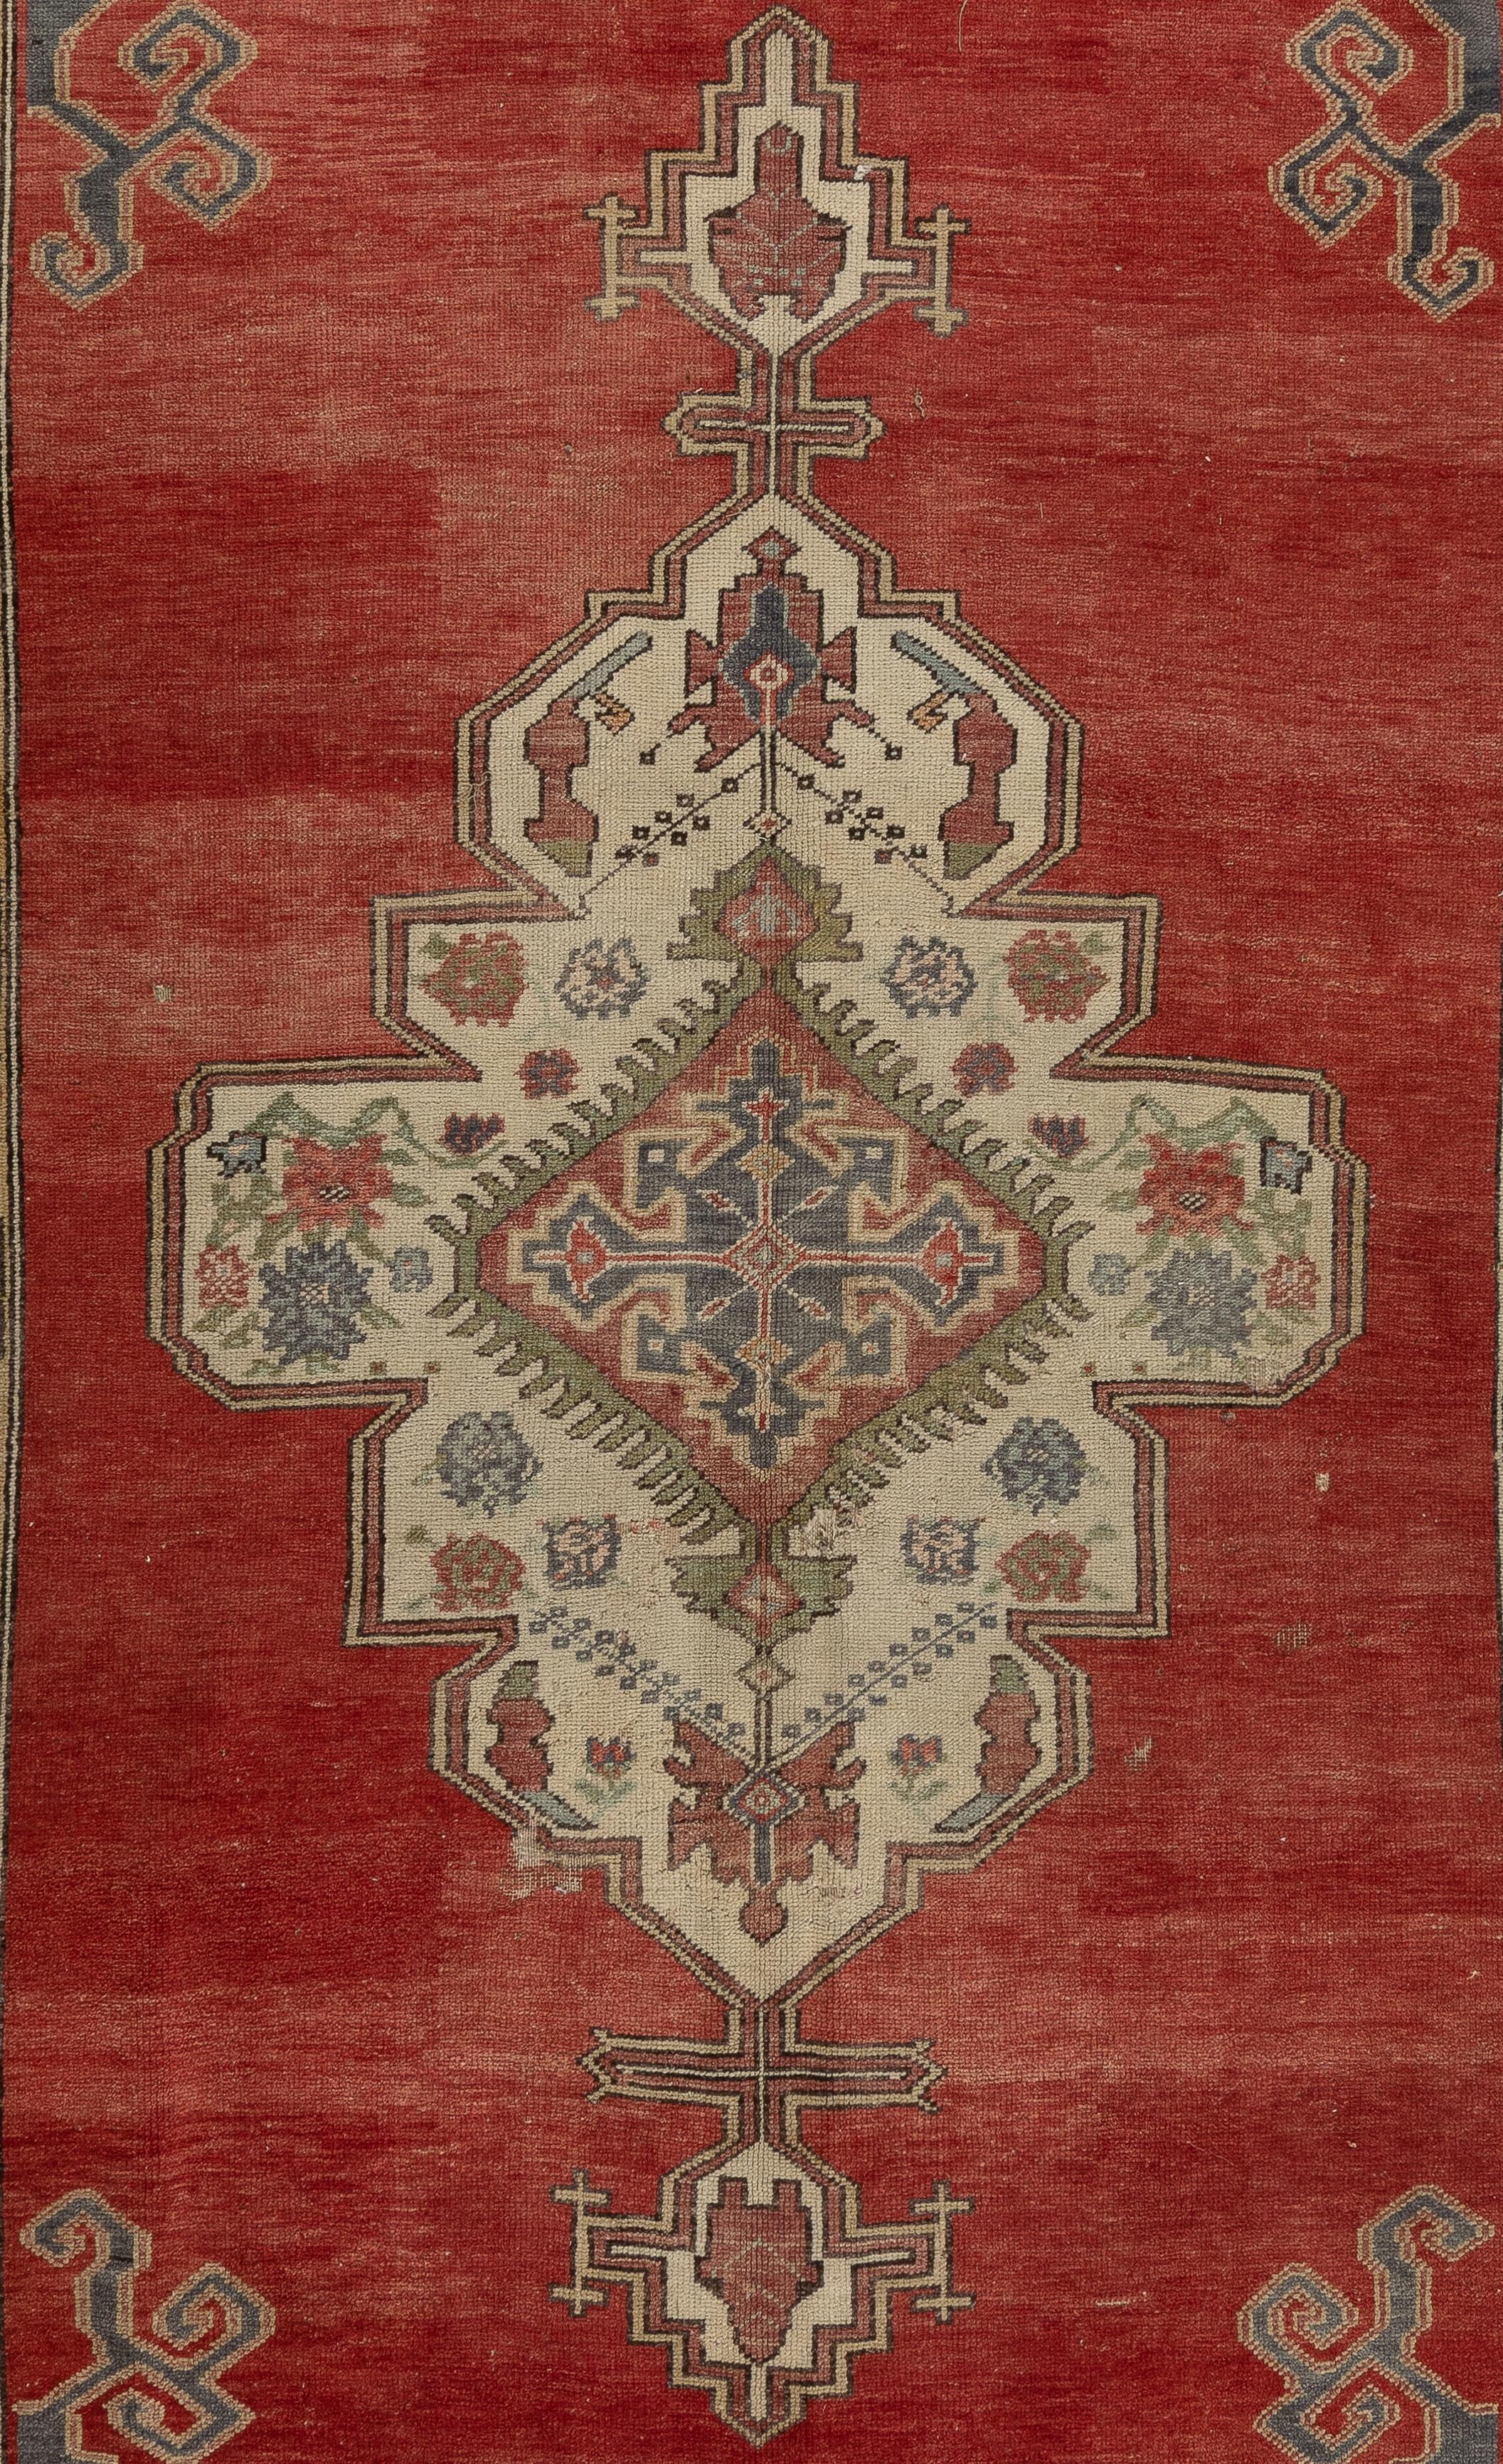 Tapis de village turc vintage à motif géométrique en médaillon. Mesures : 4.6 x 11 ft.
Le tapis est noué à la main avec de la laine de mouton naturelle, a des poils moyens doux, est en bon état et robuste. Sa palette de couleurs douces et chaudes a